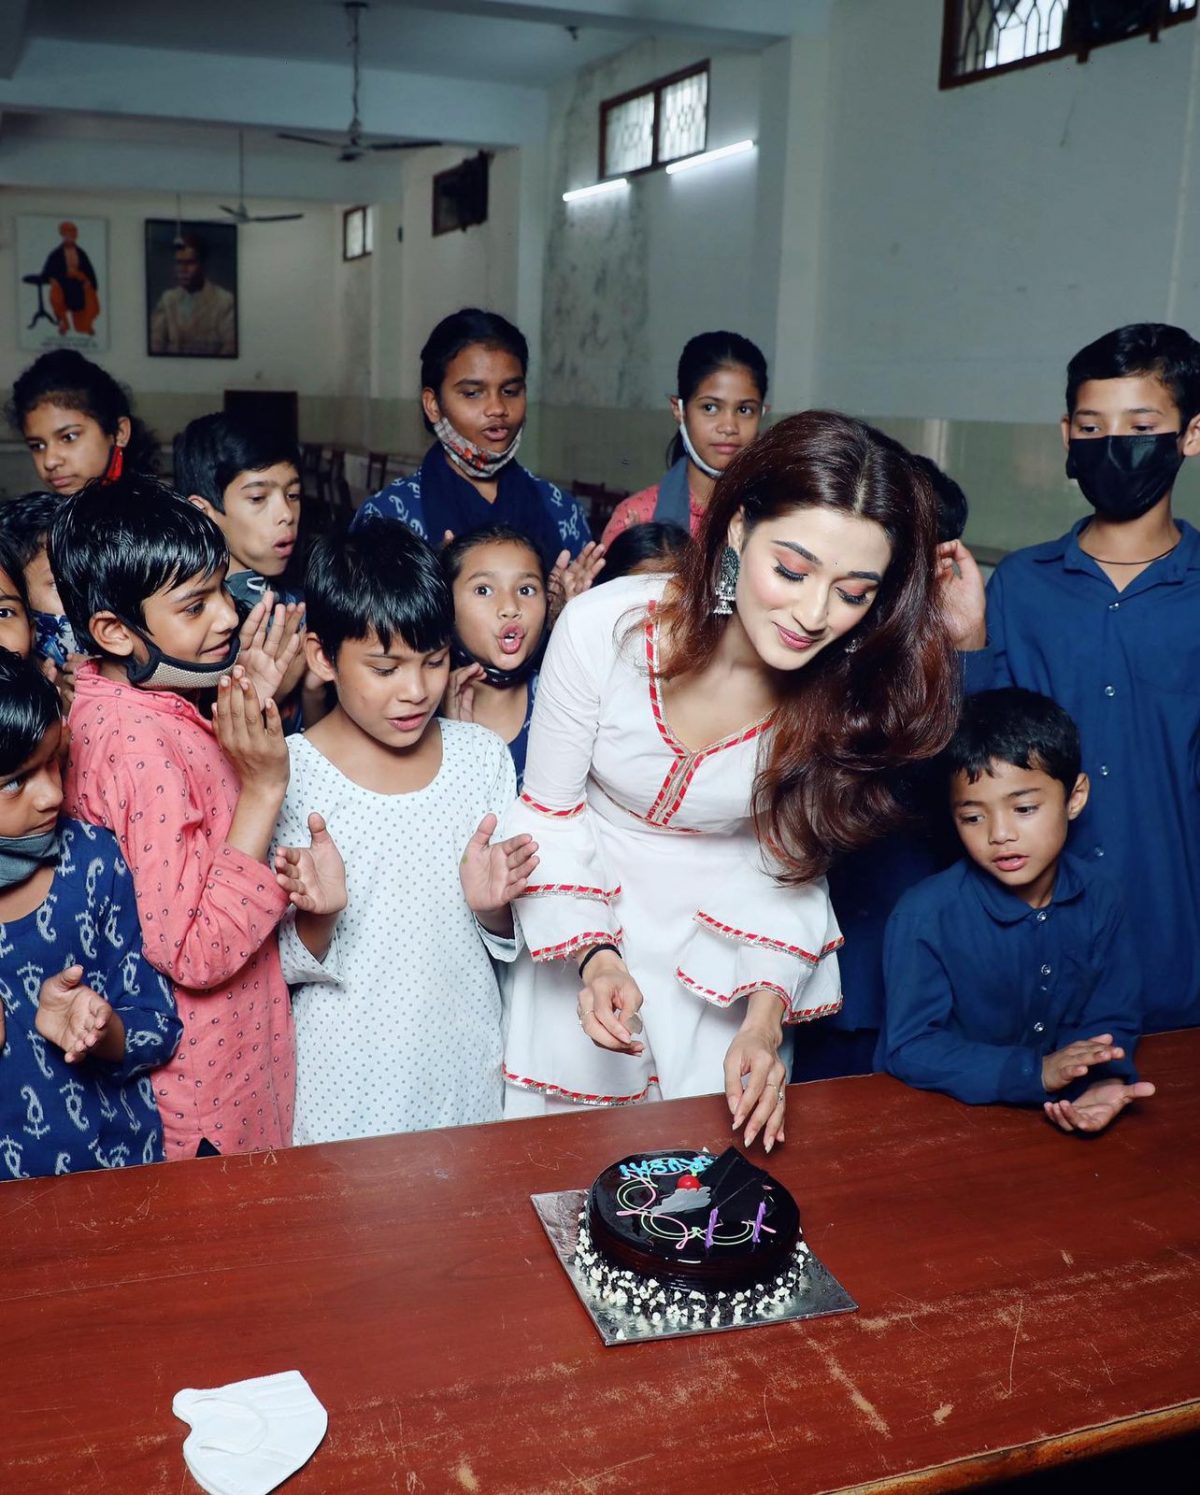 एक्टर व सामाजिक कार्यकर्त्ता आरुषि निशंक ने आश्रम में अनाथ बच्चों के साथ मनाया अपना जन्मदिन